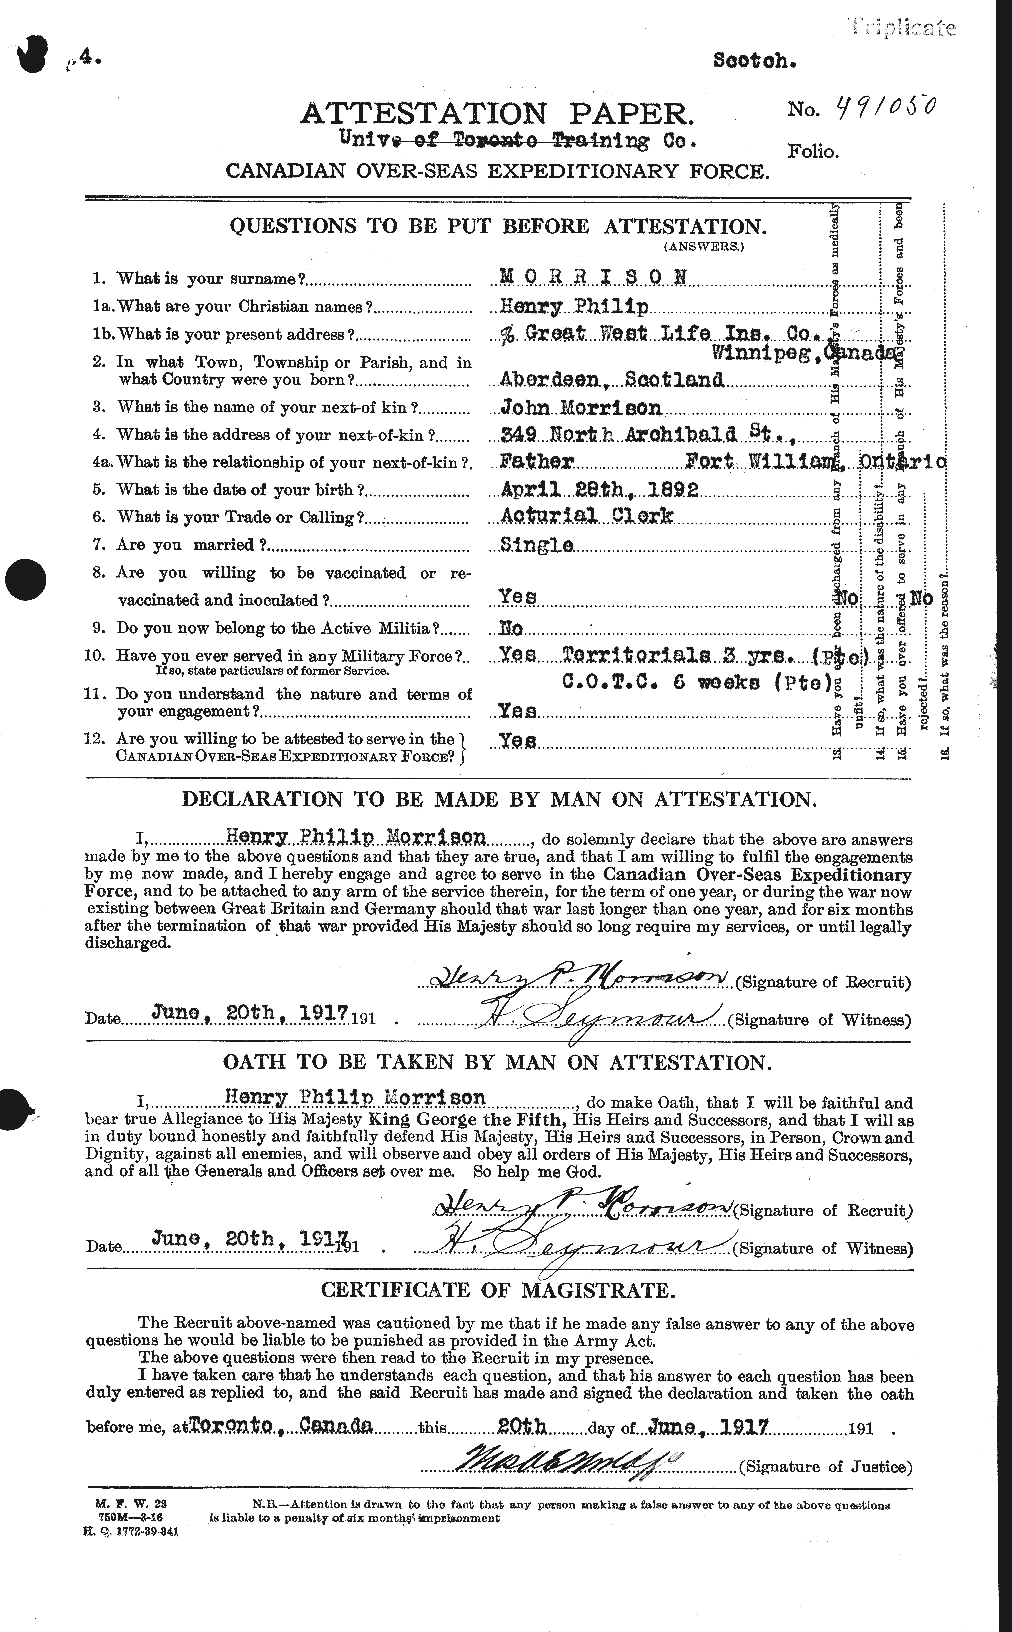 Dossiers du Personnel de la Première Guerre mondiale - CEC 506864a